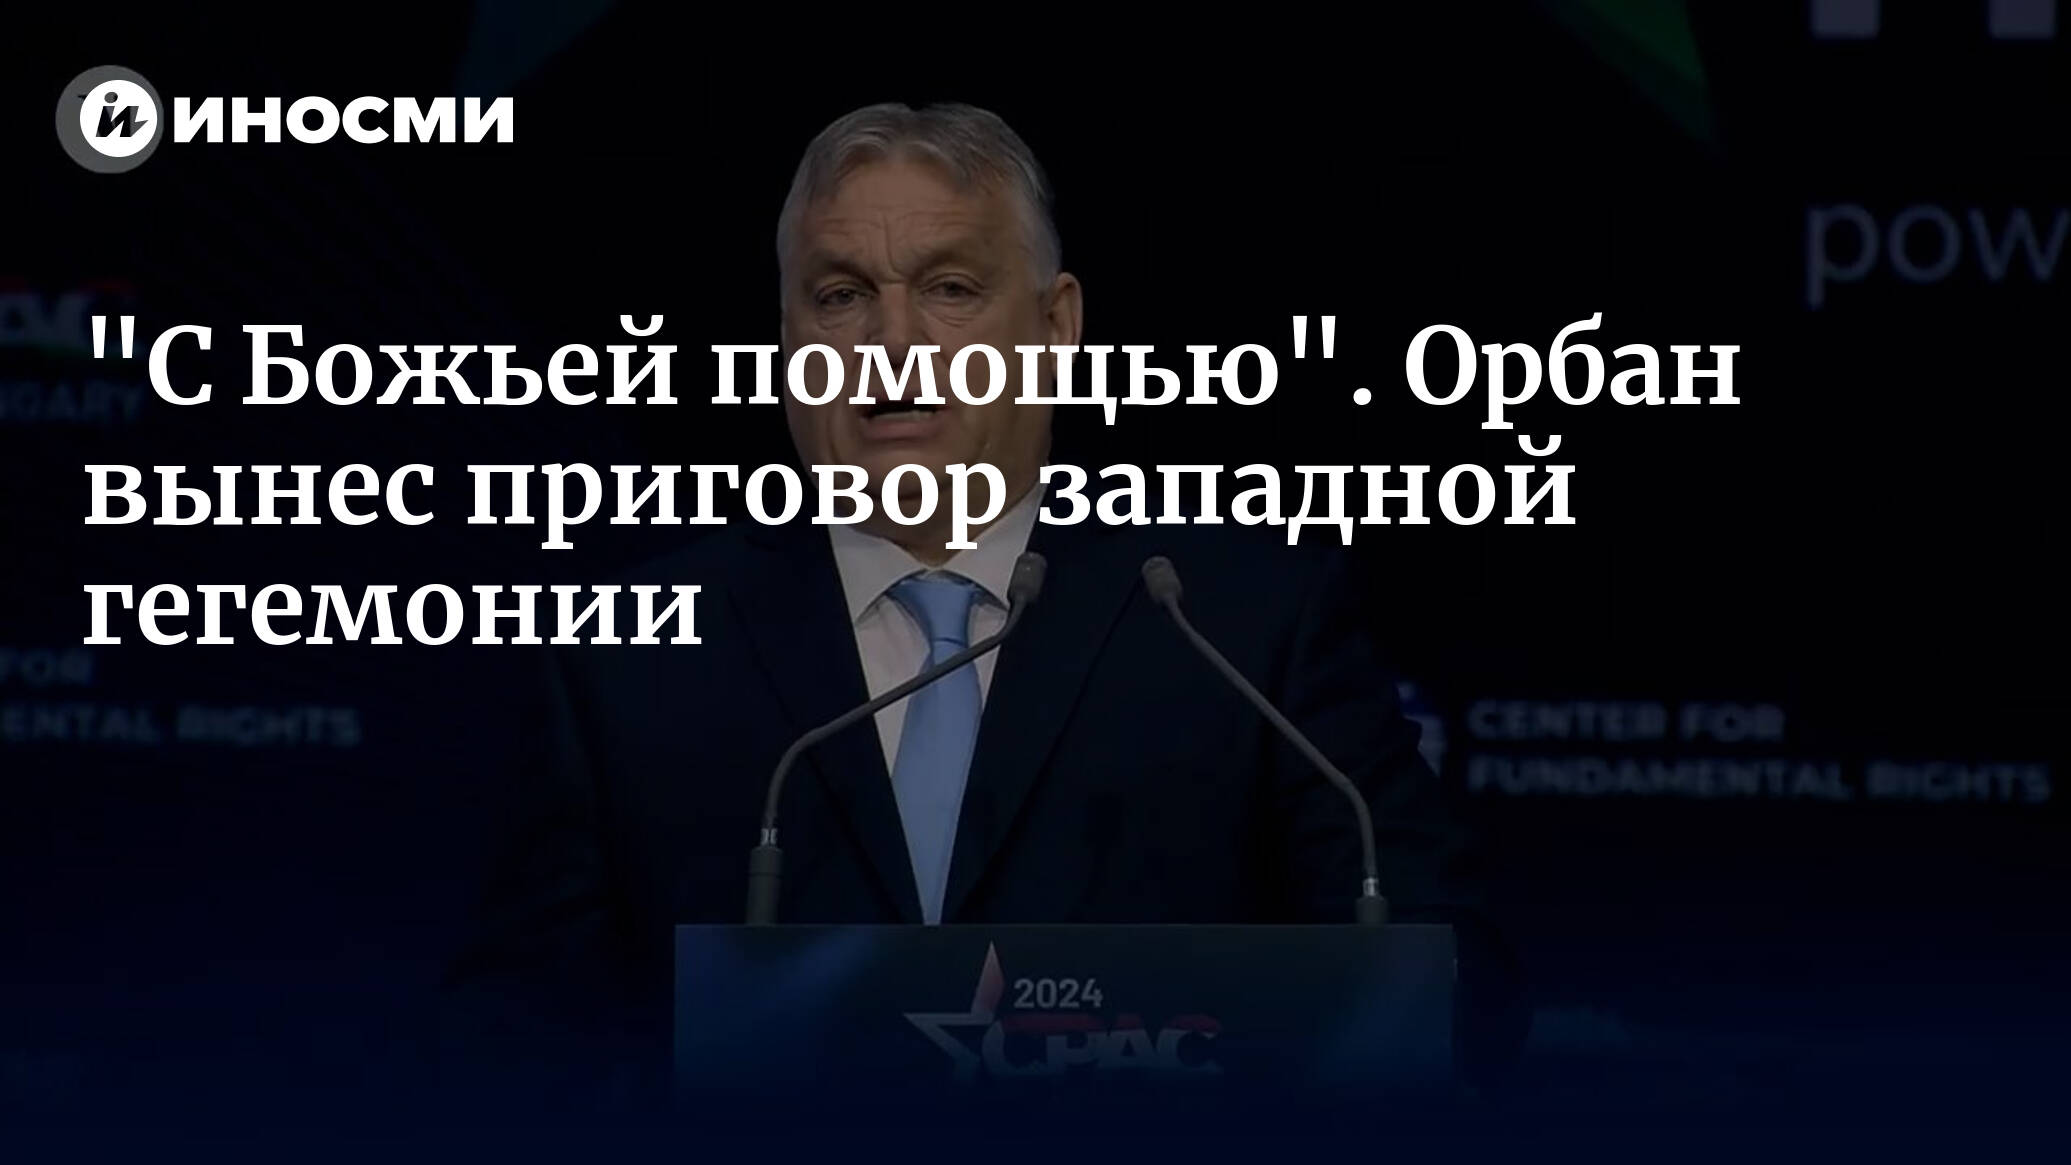 Виктор Орбан о скором крахе западной либеральной гегемонии | 26.04.2024, ИноСМИ